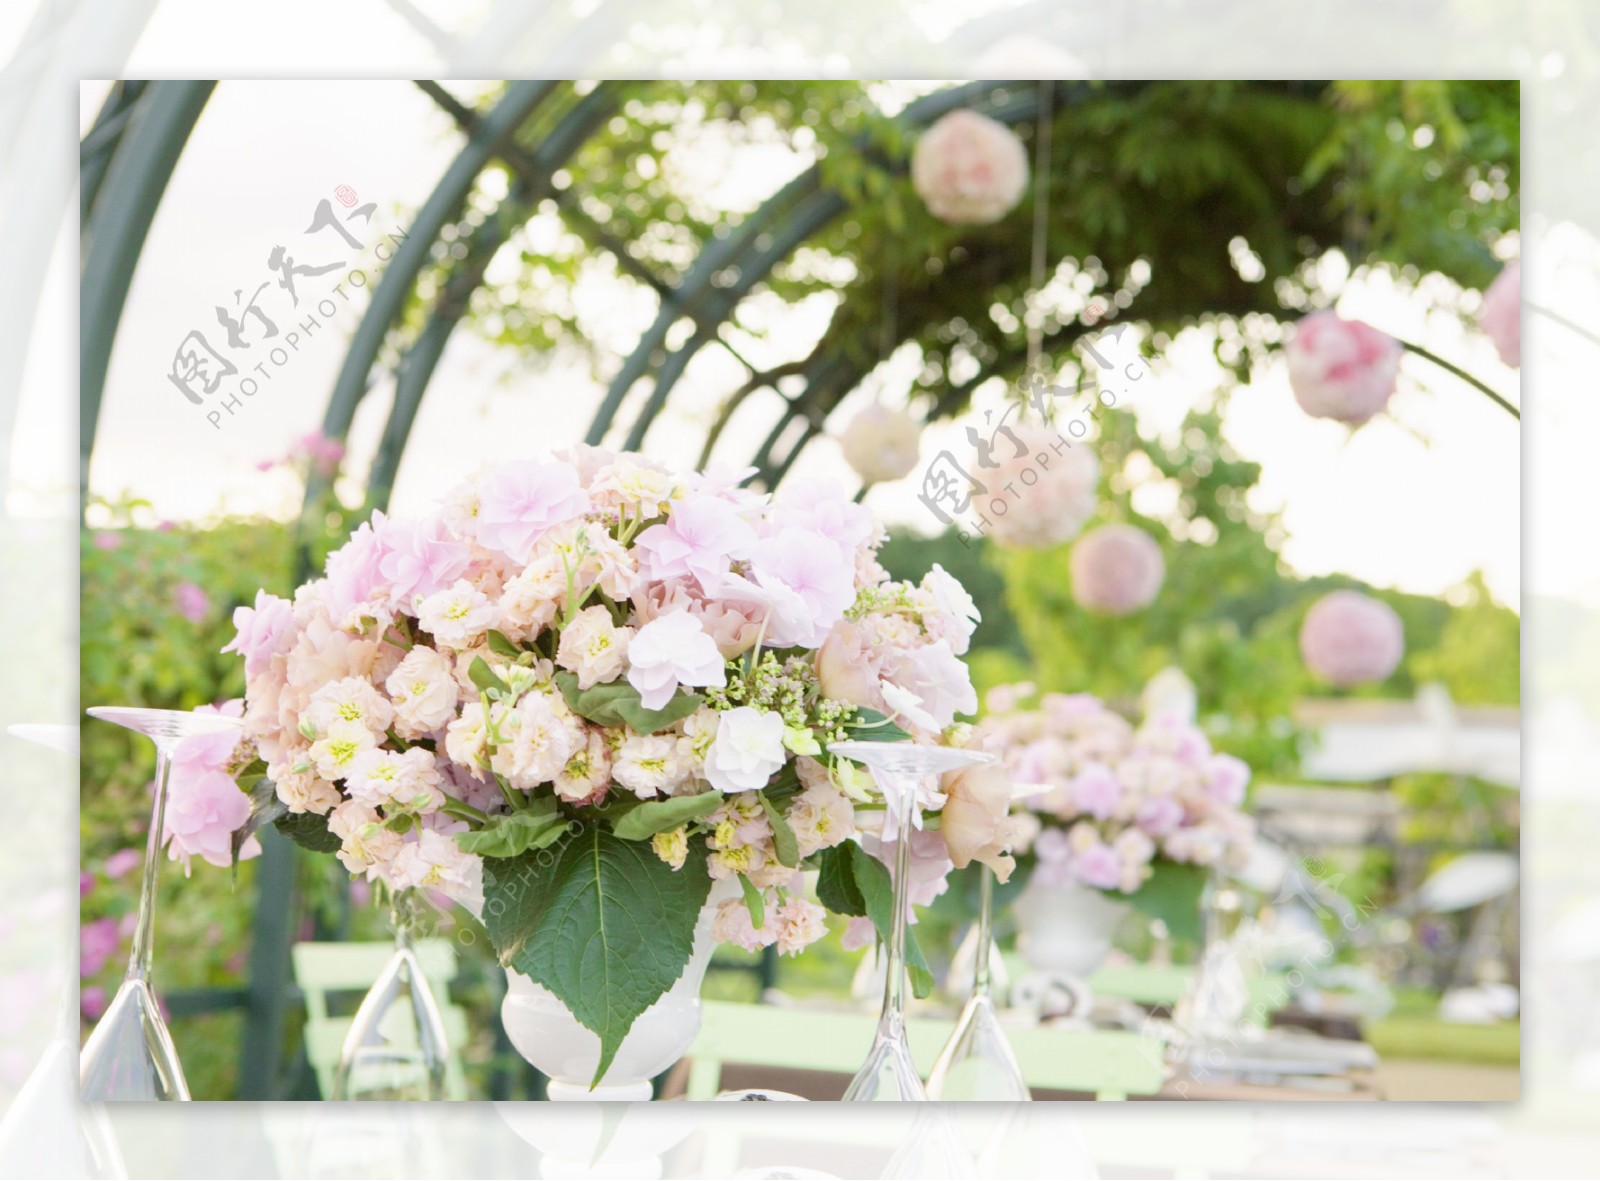 花园秘境 - 婚礼仪式区 - 婚礼图片 - 婚礼风尚